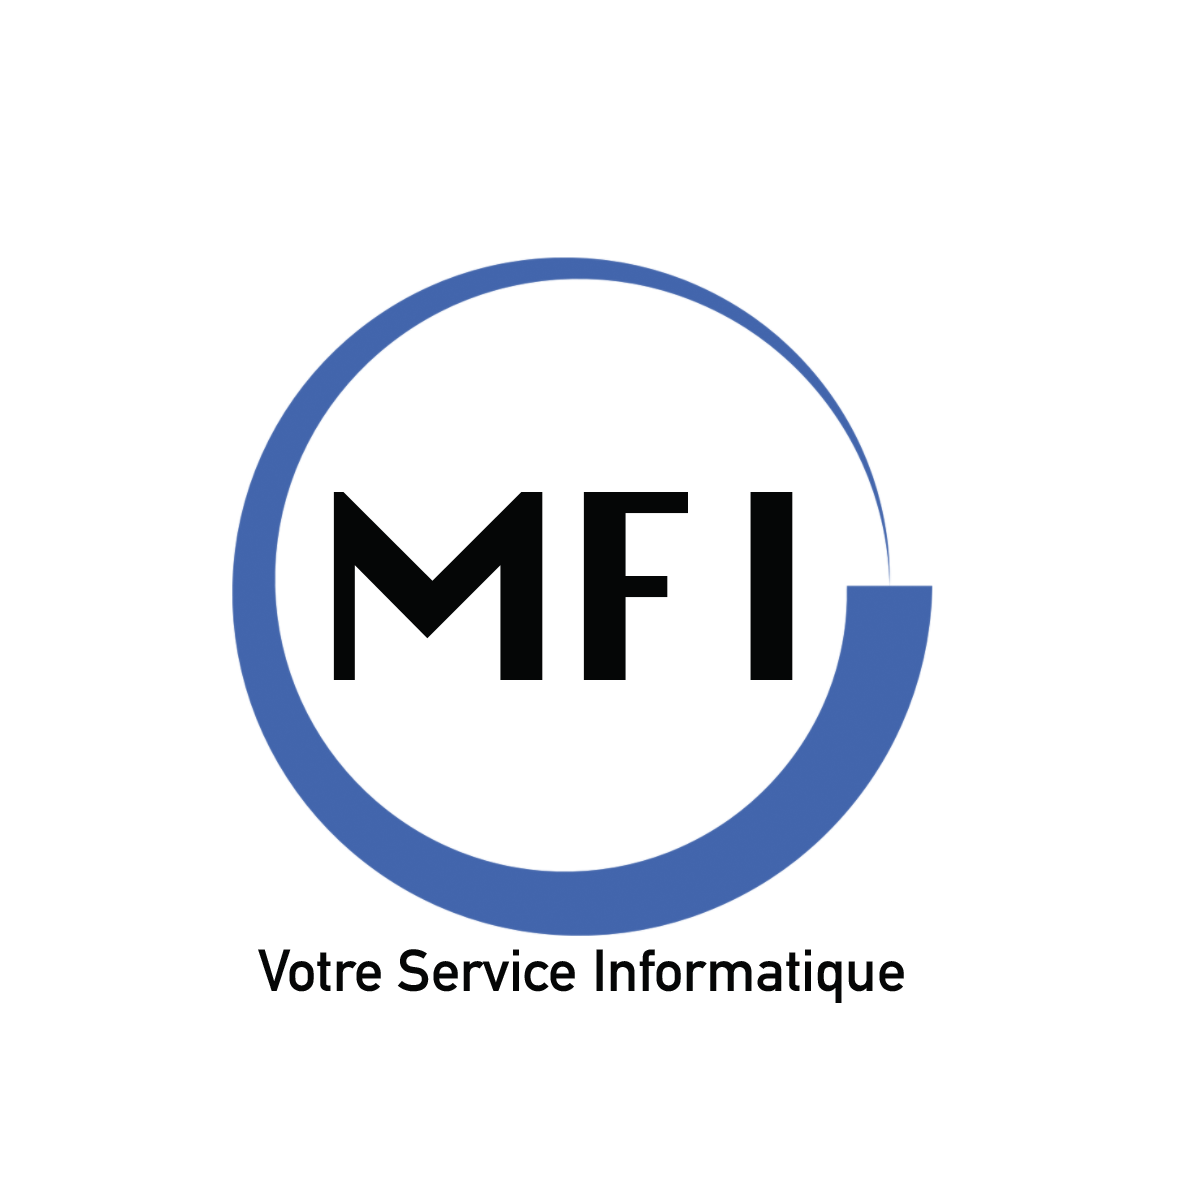 MFI-Informatique